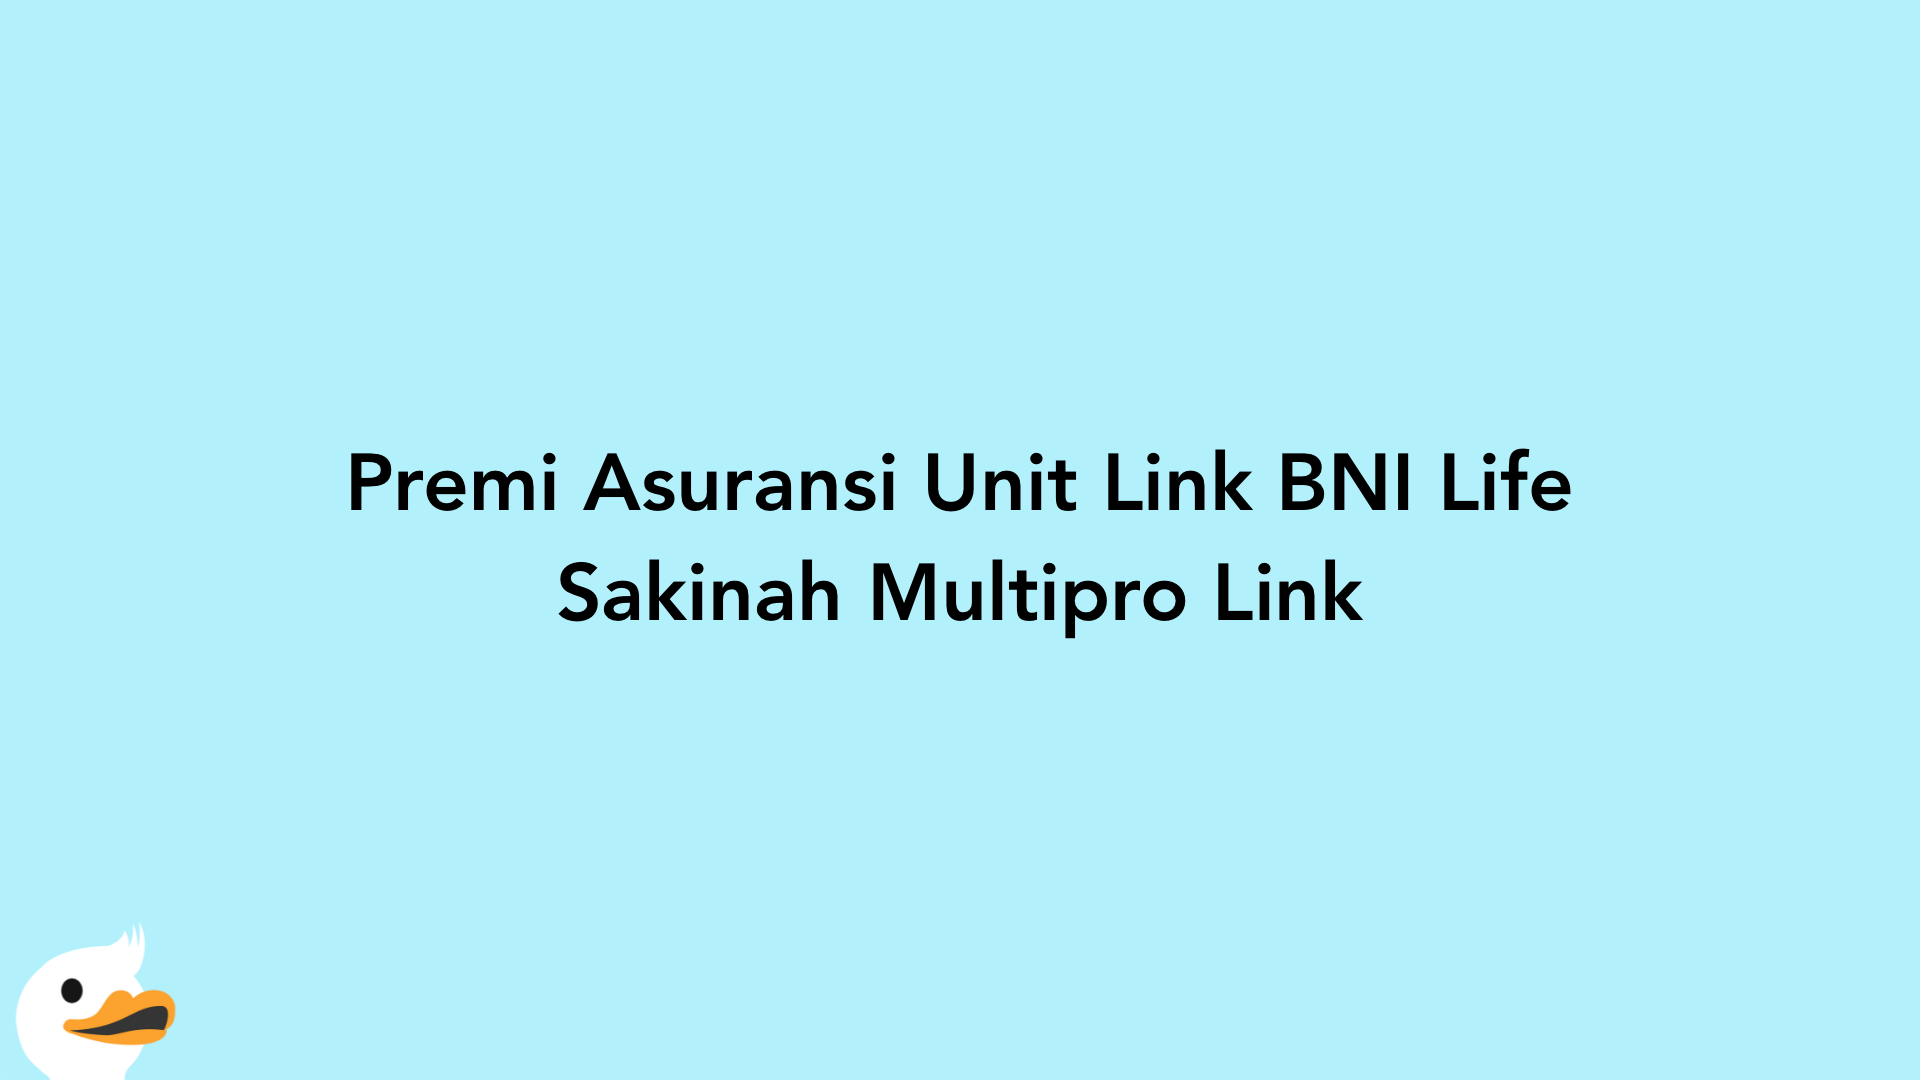 Premi Asuransi Unit Link BNI Life Sakinah Multipro Link